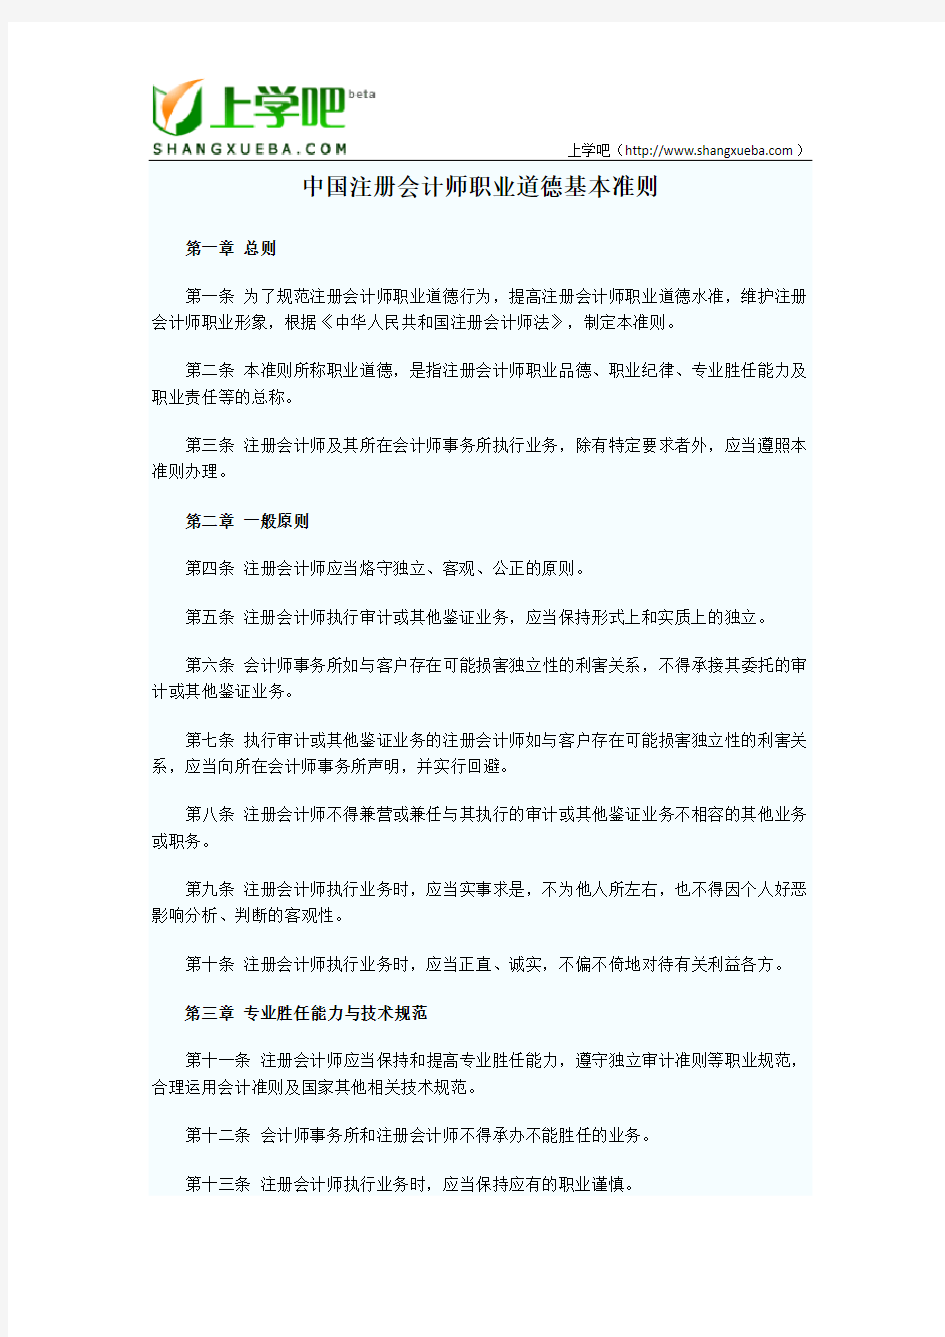 中国注册会计师职业道德基本准则